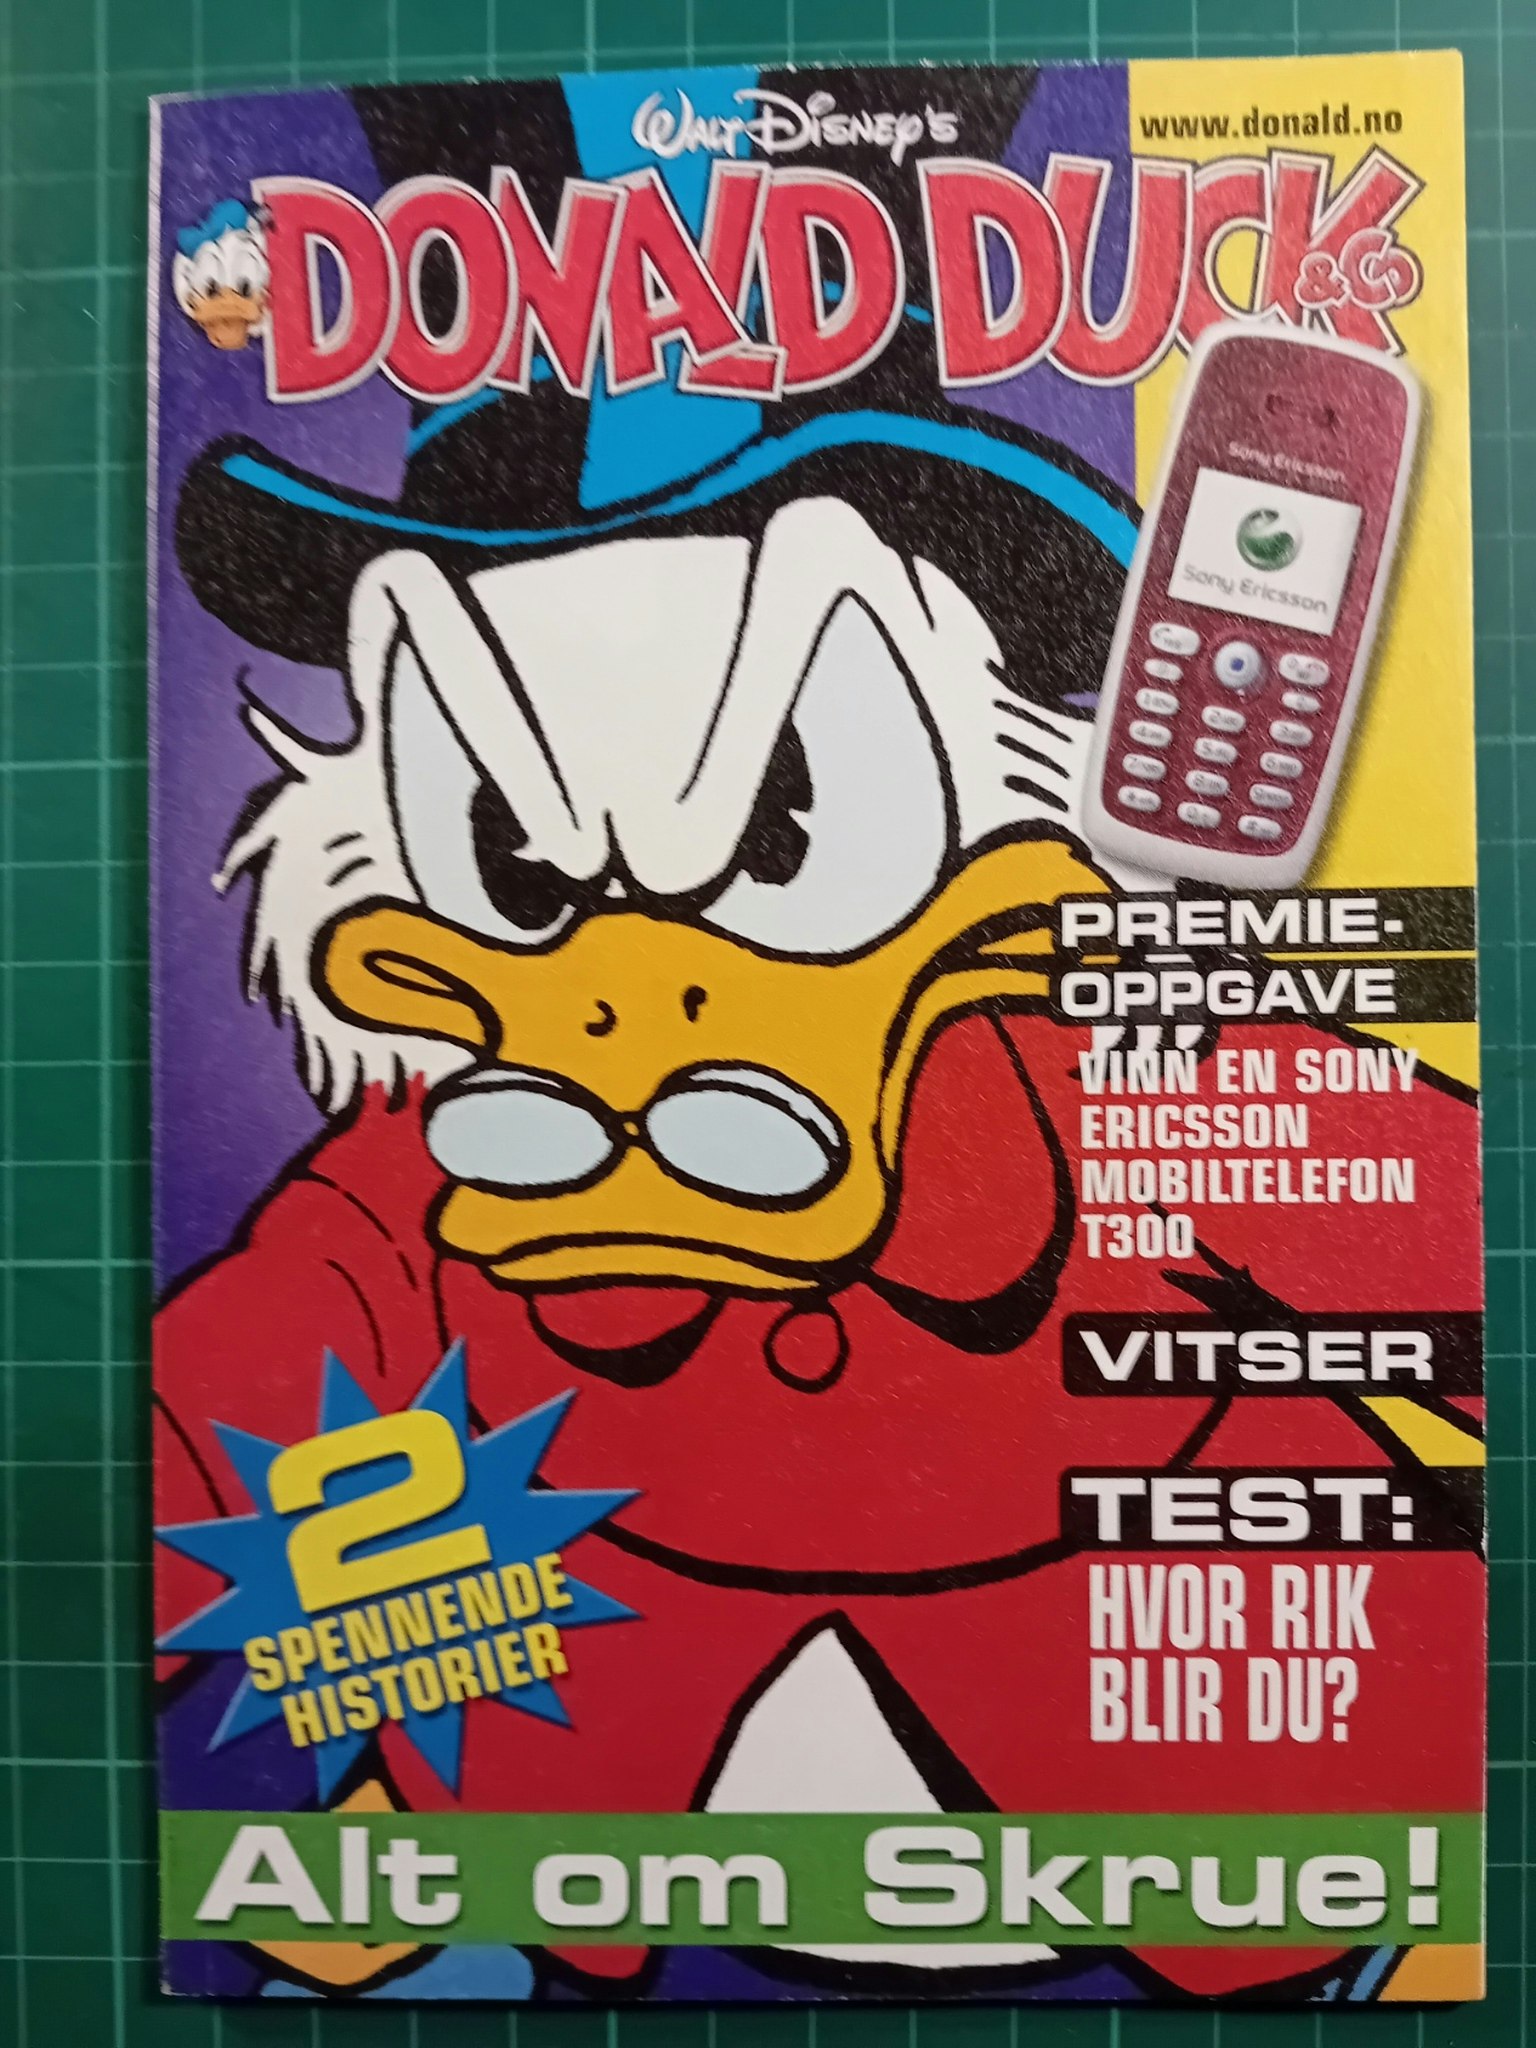 Donald Duck & Co Kellogg's spesialhefte 1 av 4